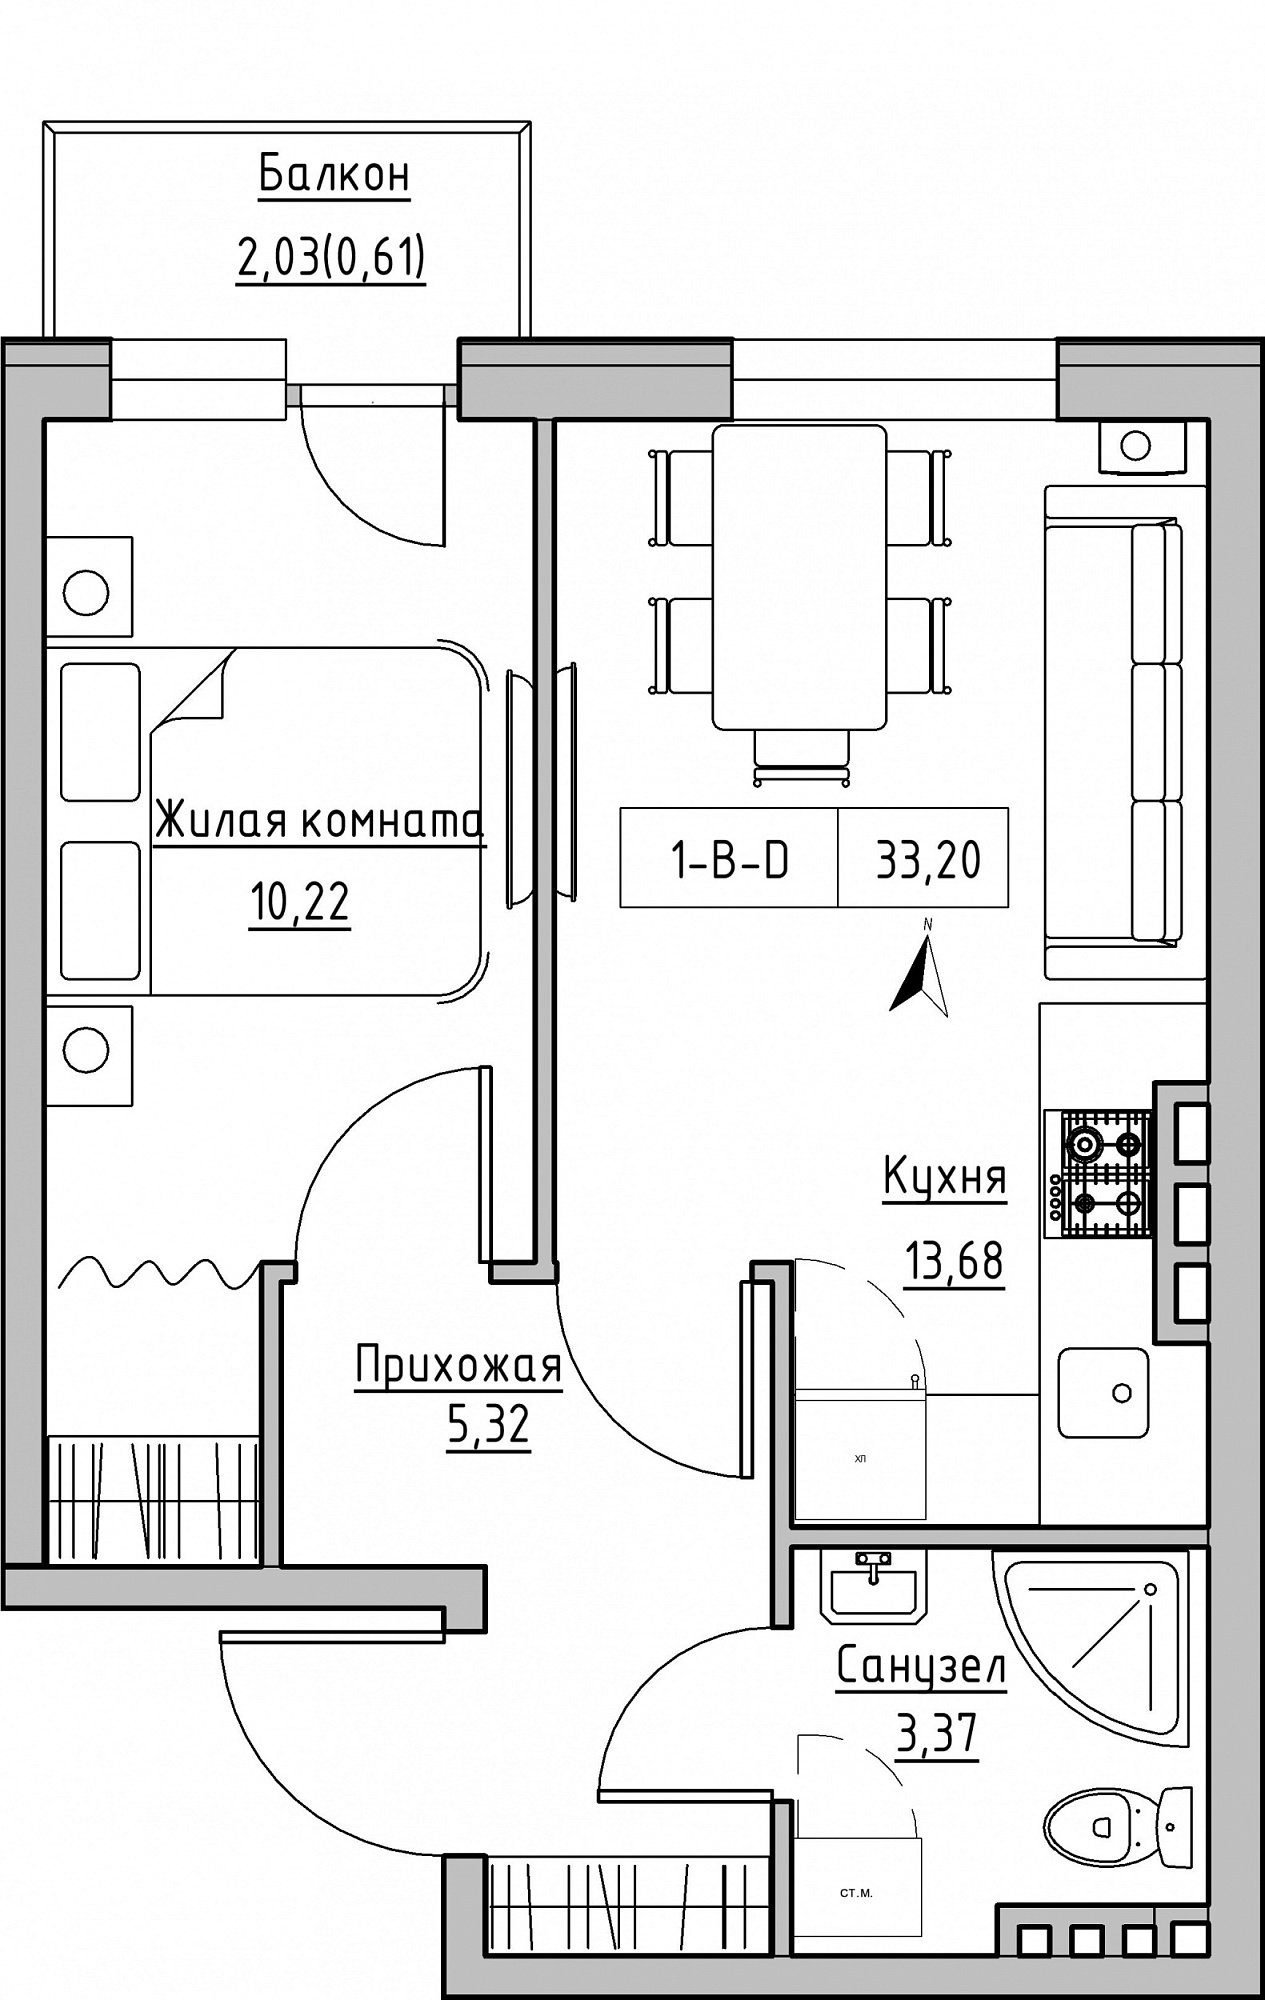 Планировка 1-к квартира площей 33.2м2, KS-024-05/0003.